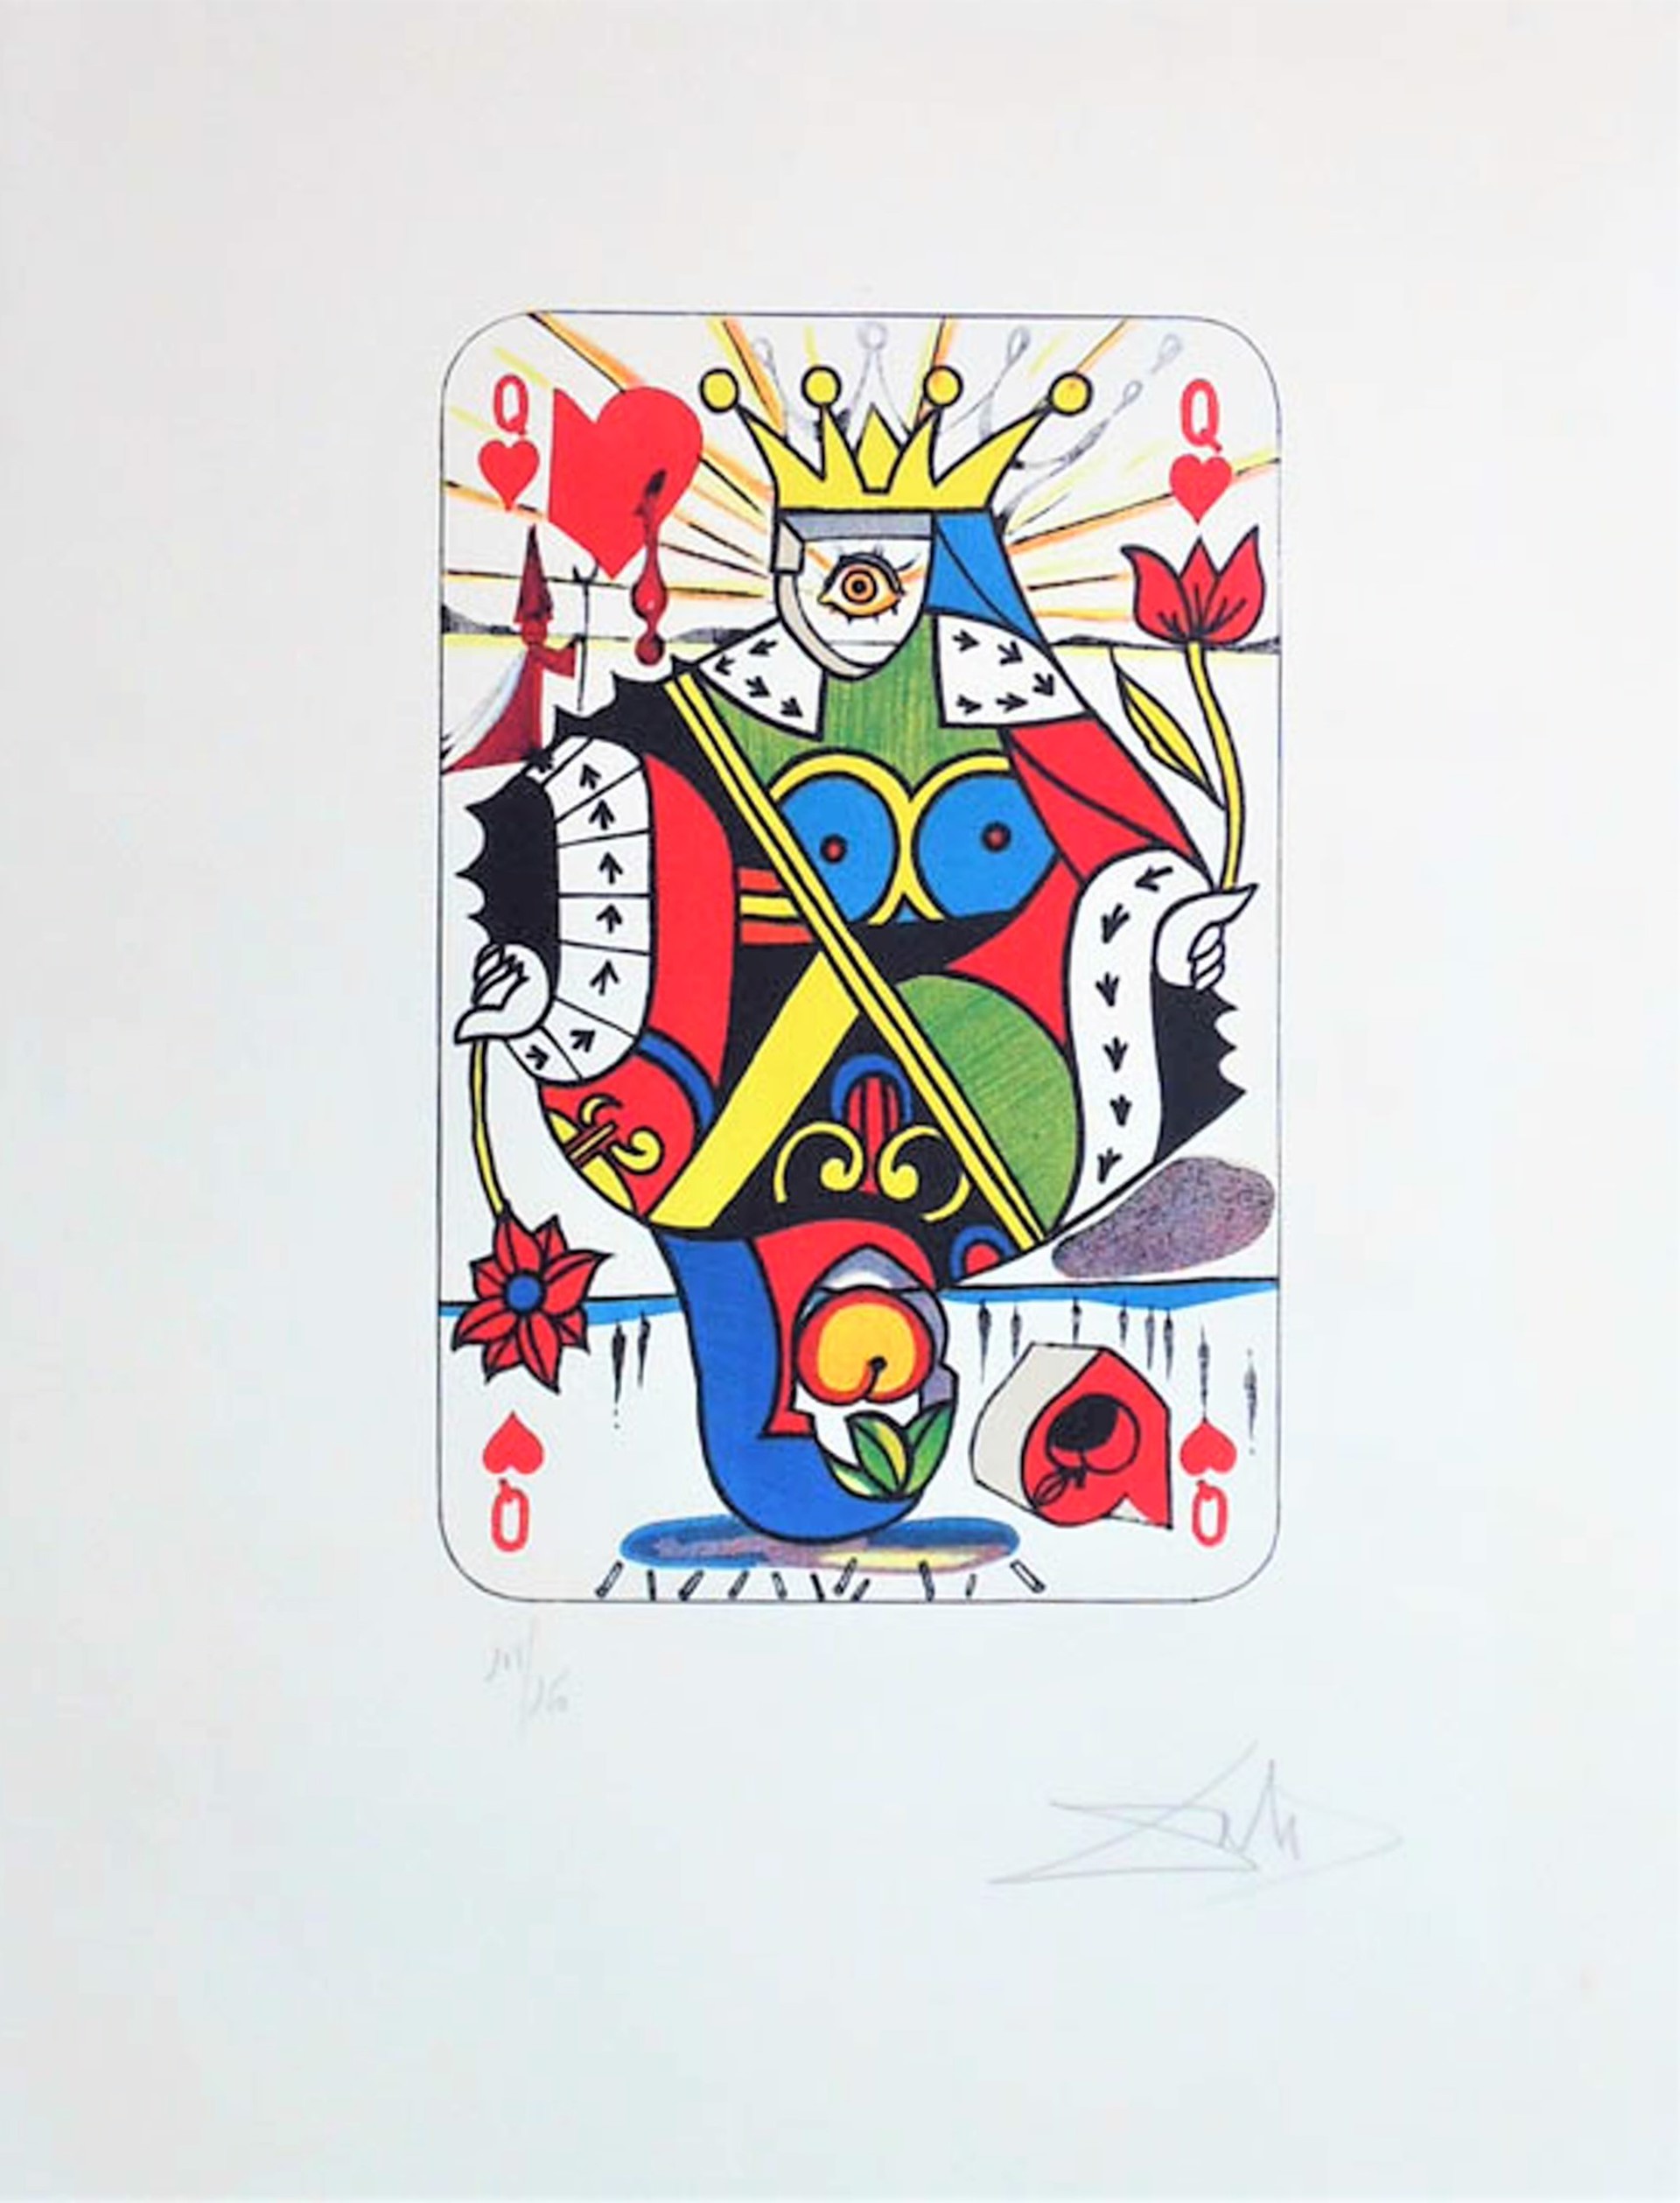 Queen of Hearts by Salvador Dali